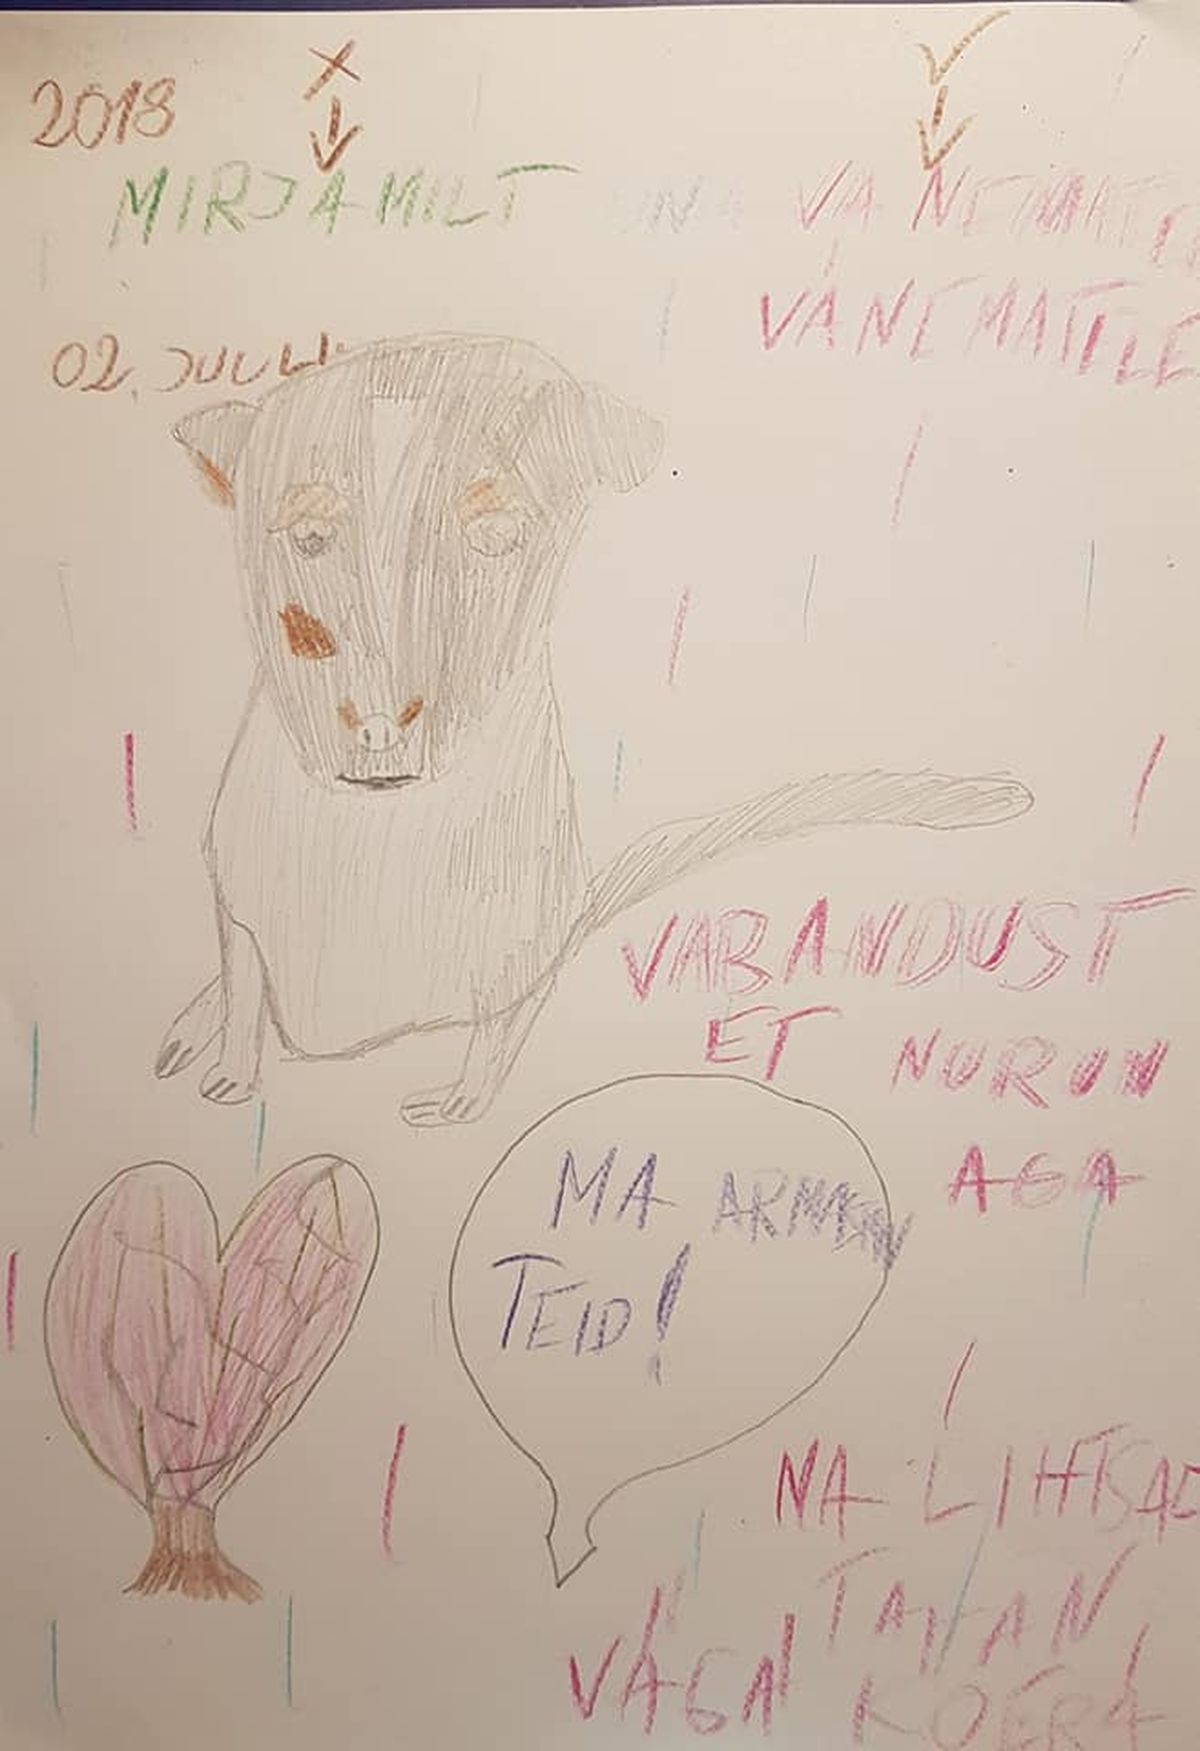 See pilt on joonistatud kaks aastat enne Muru sündimist. Peretütar Mirjam igatses endale väga-väga koera.